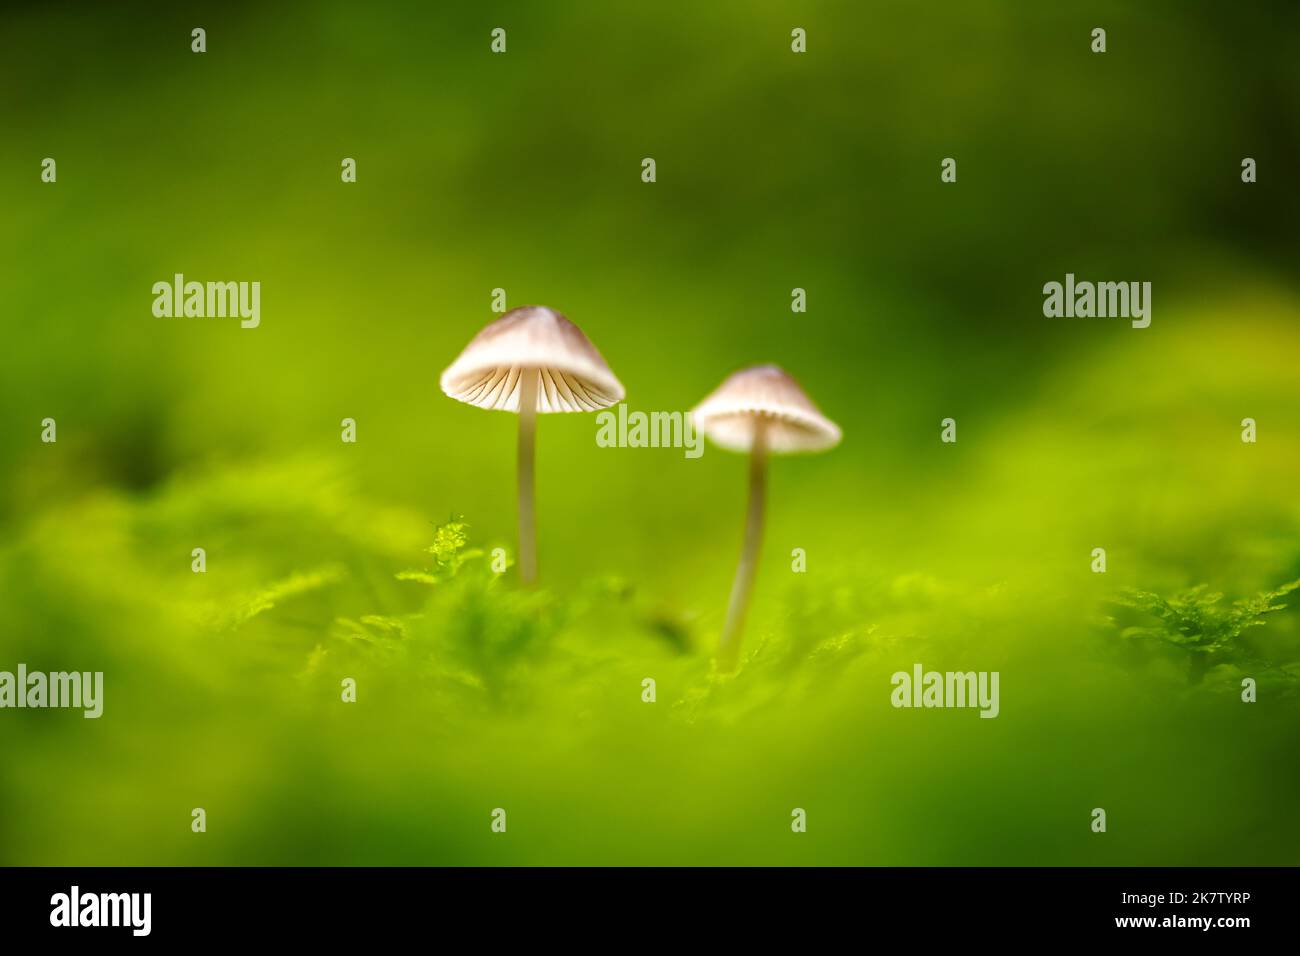 Belle photo macro de deux champignons de la forêt en mousse. Photographie macro nature Banque D'Images